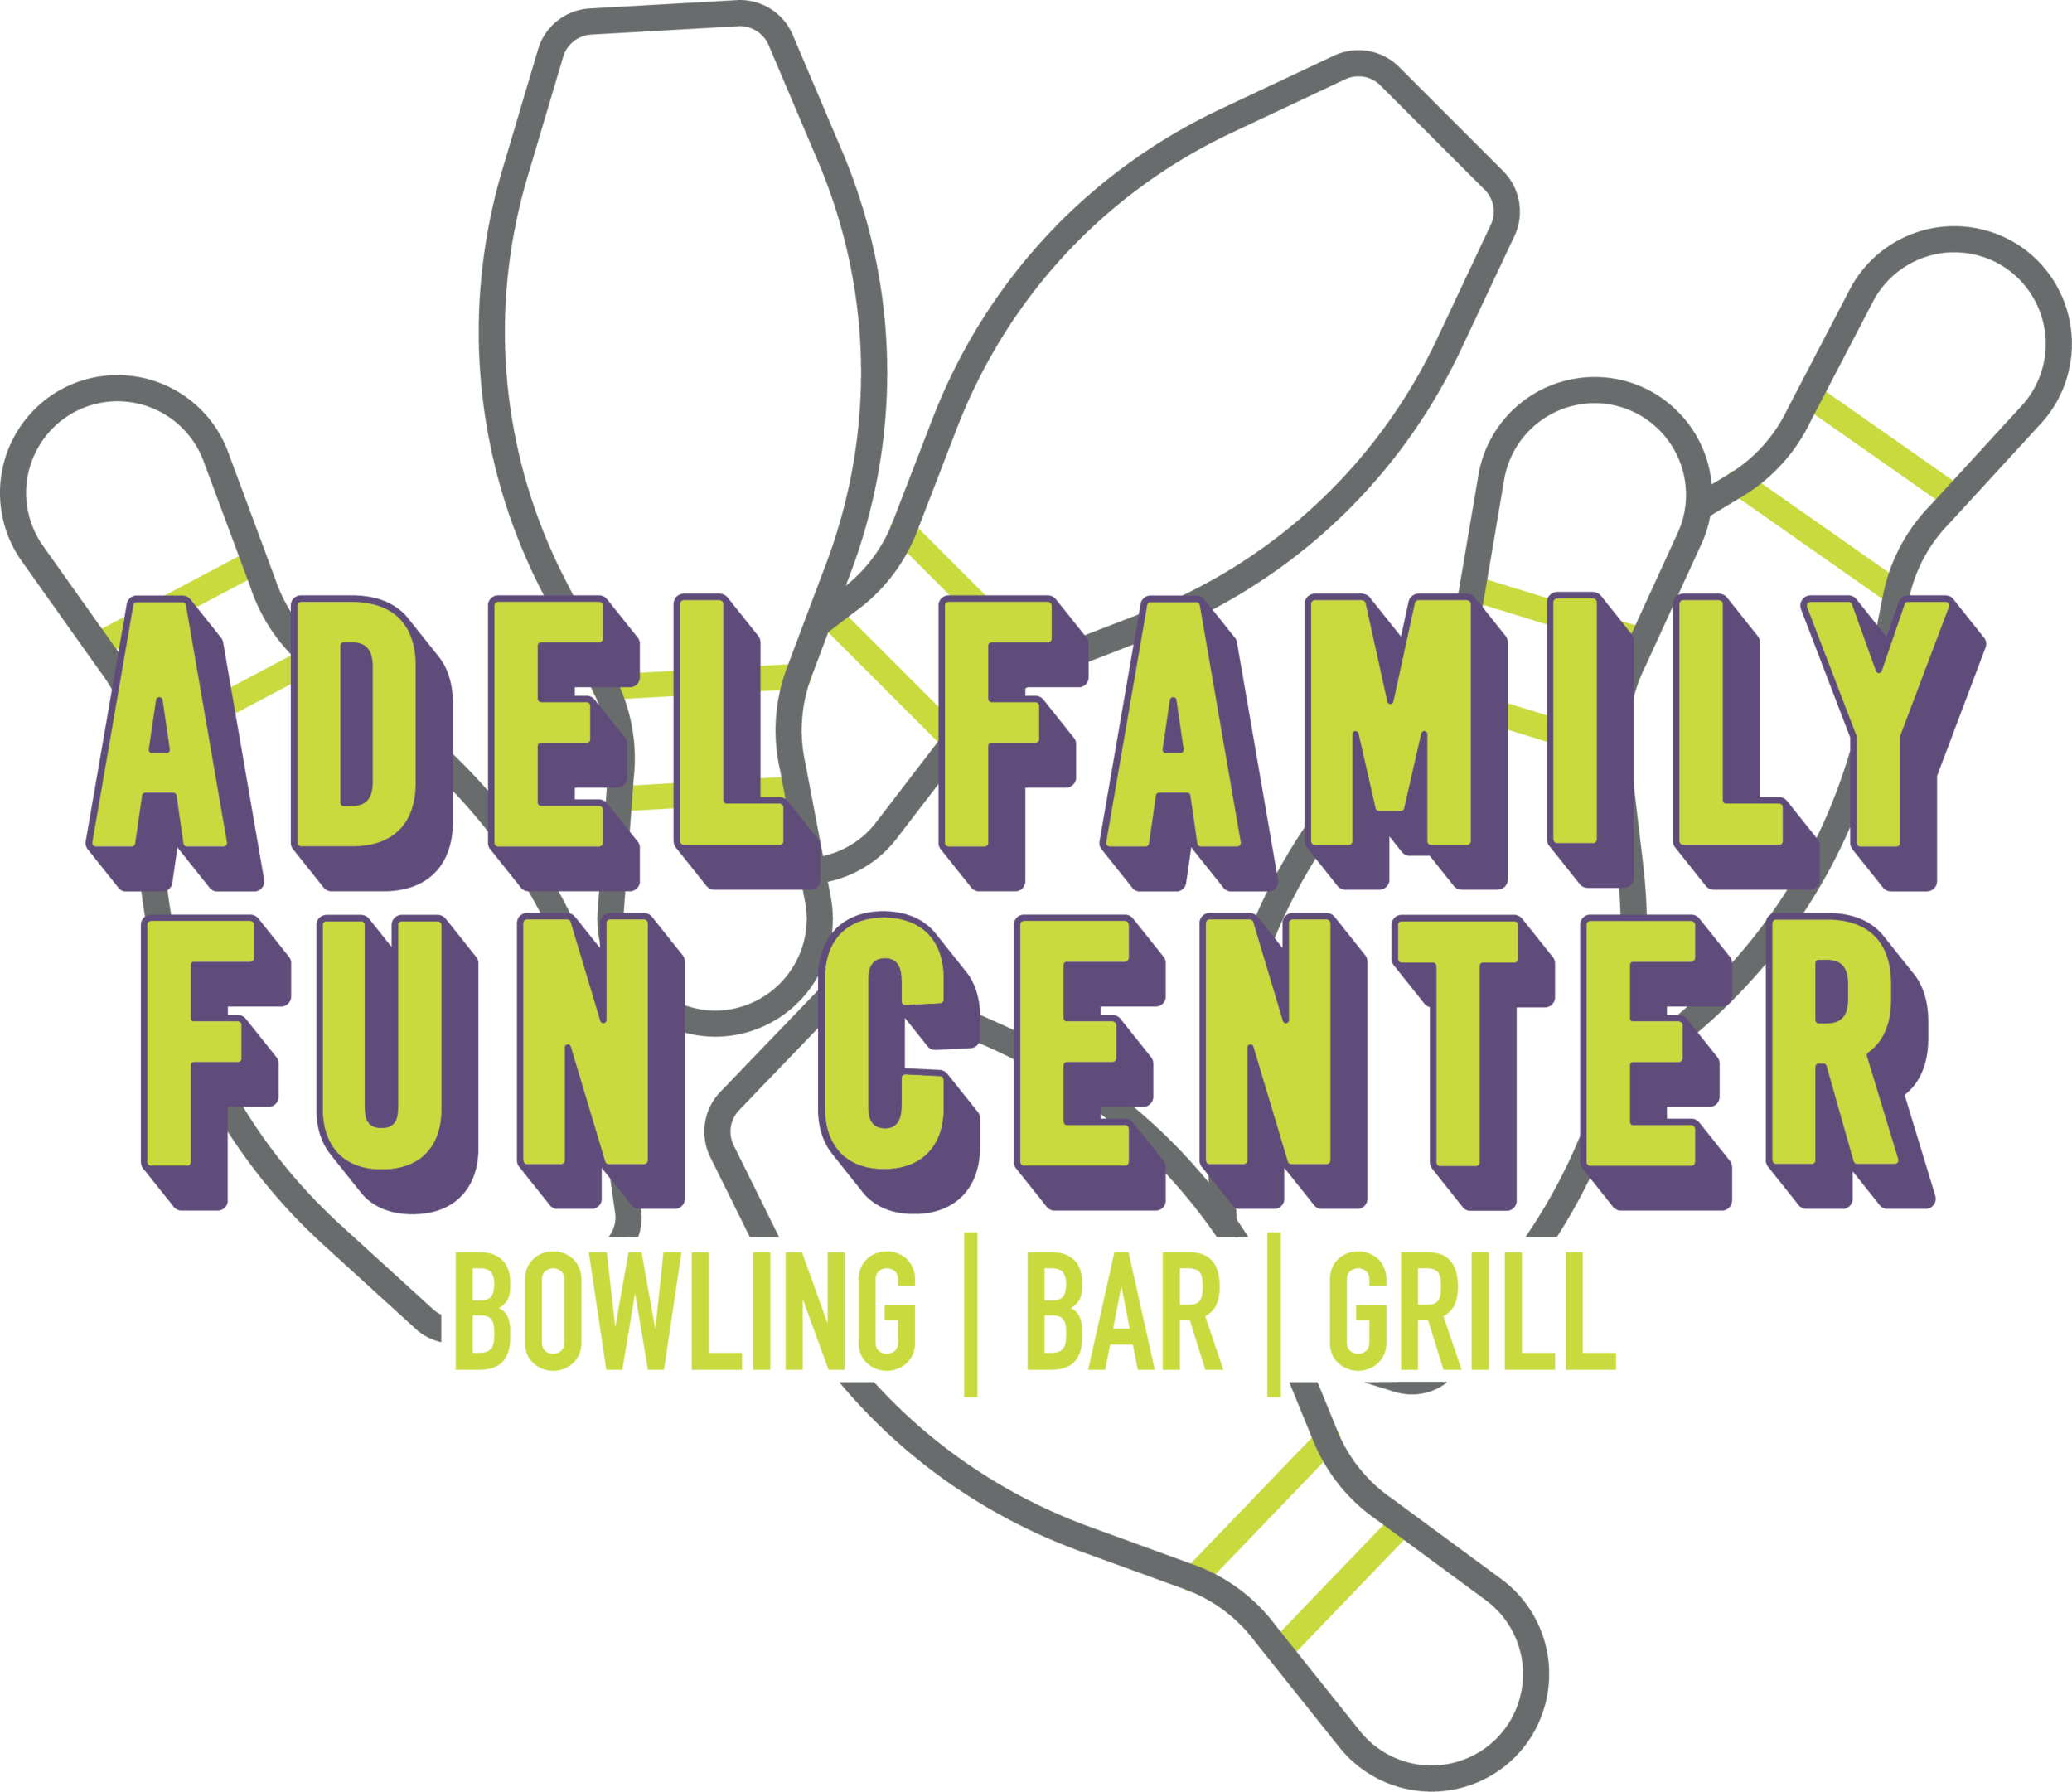 Adel Family Fun Center